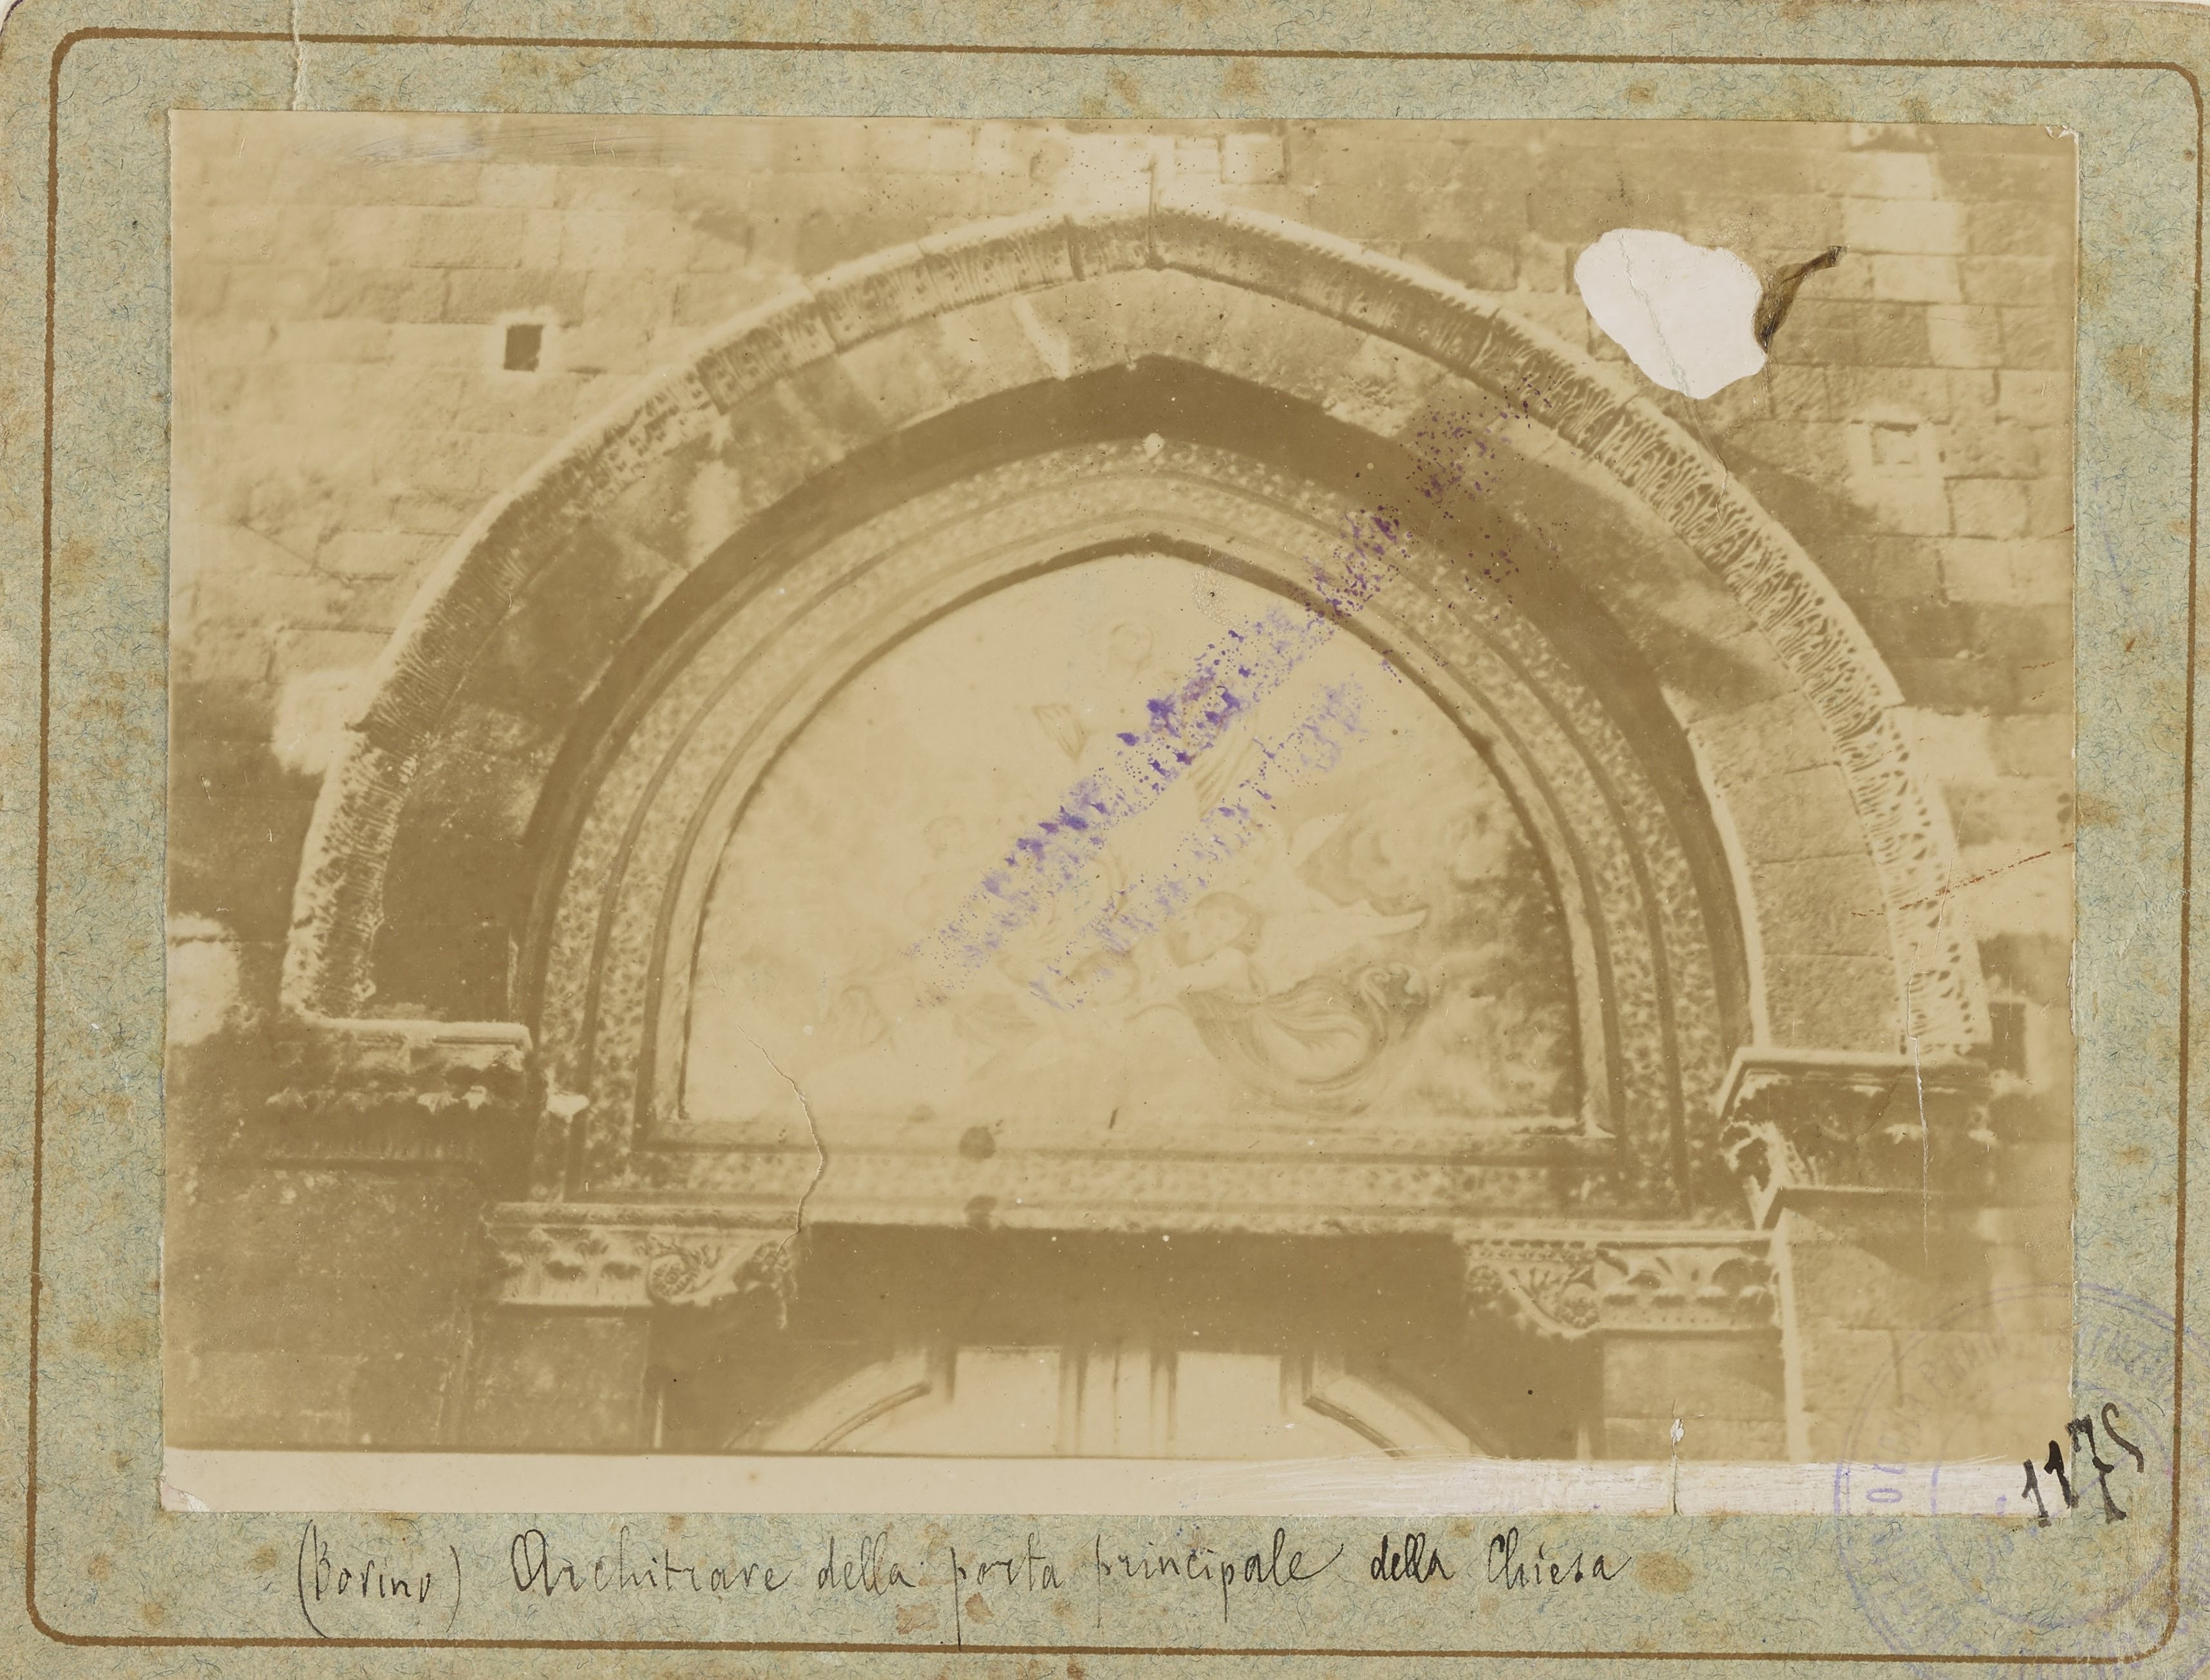 Fotografo non identificato, Bovino - Chiesa di S. Maria assunta, facciata, lunetta del portale mediano, 1876-1900, aristotipo, MPI141090